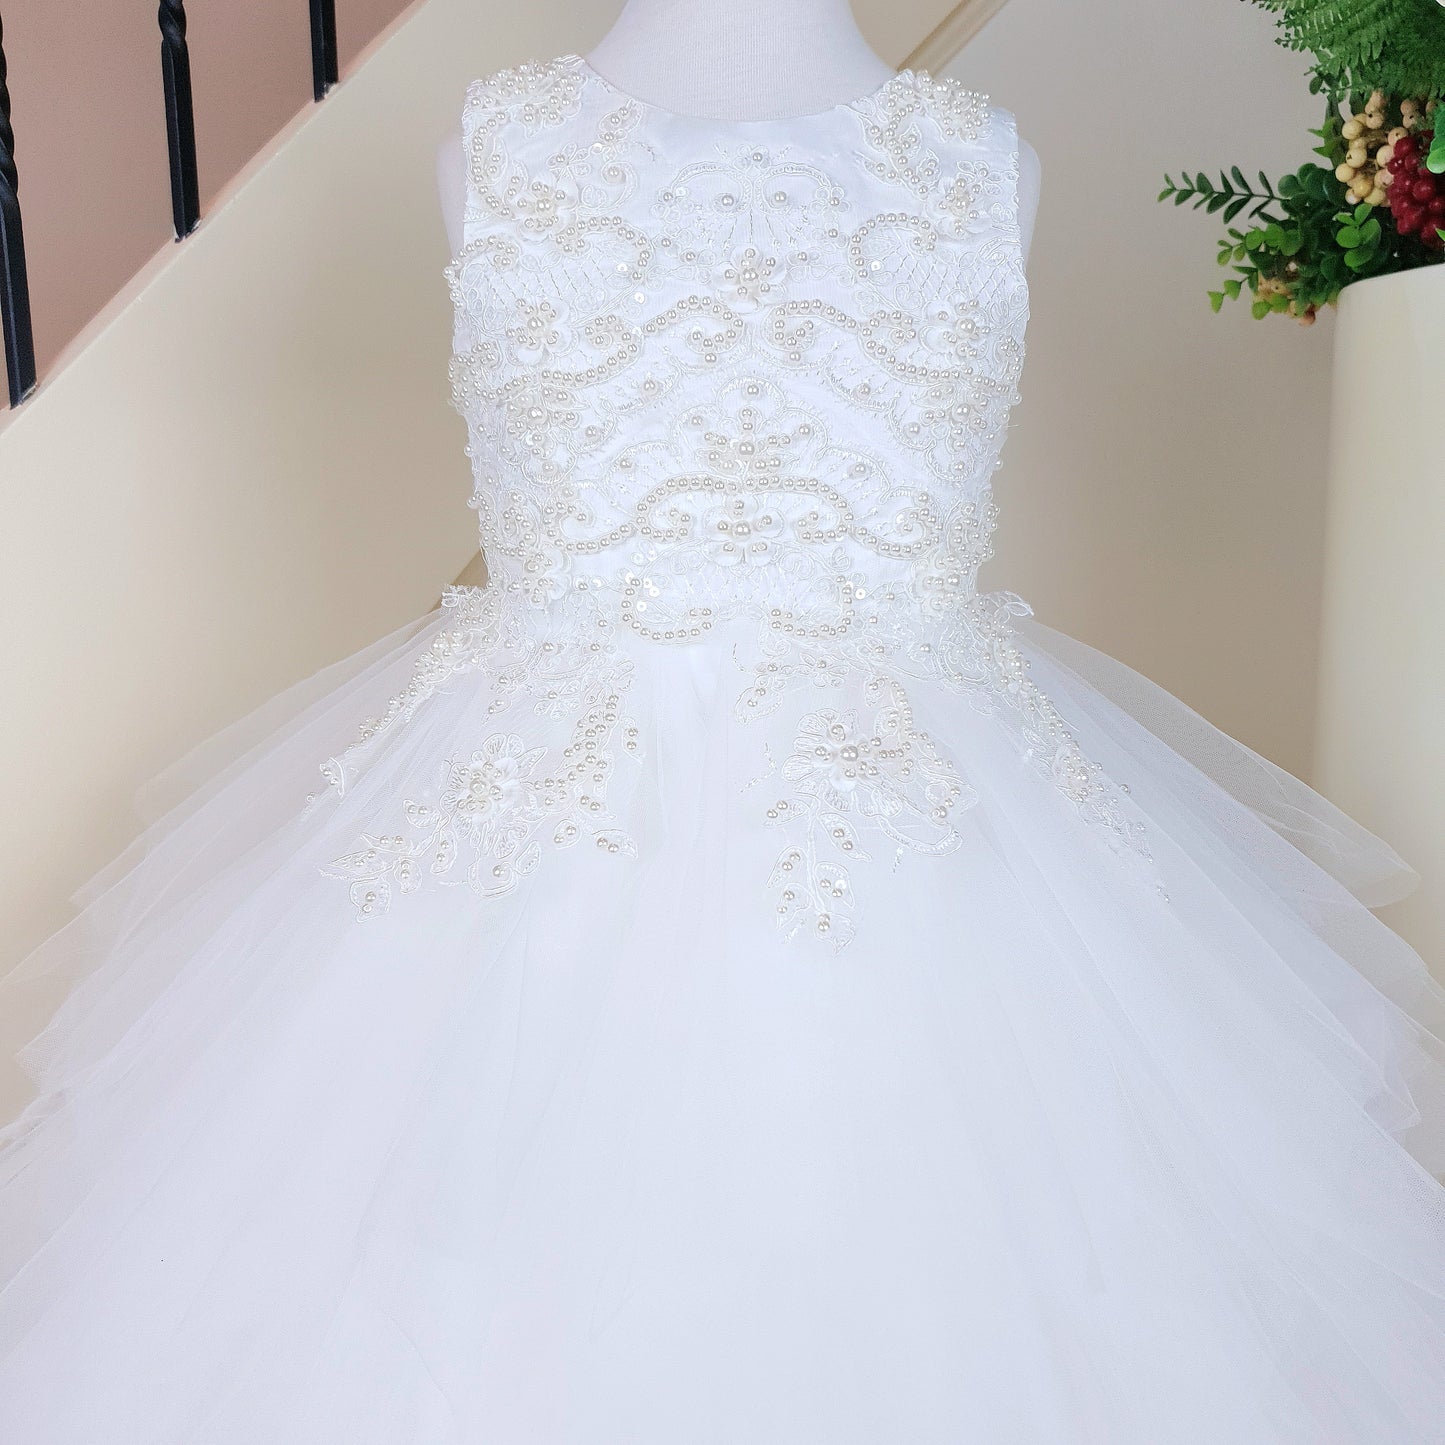 Elegant beaded bodice layered tulle white dress